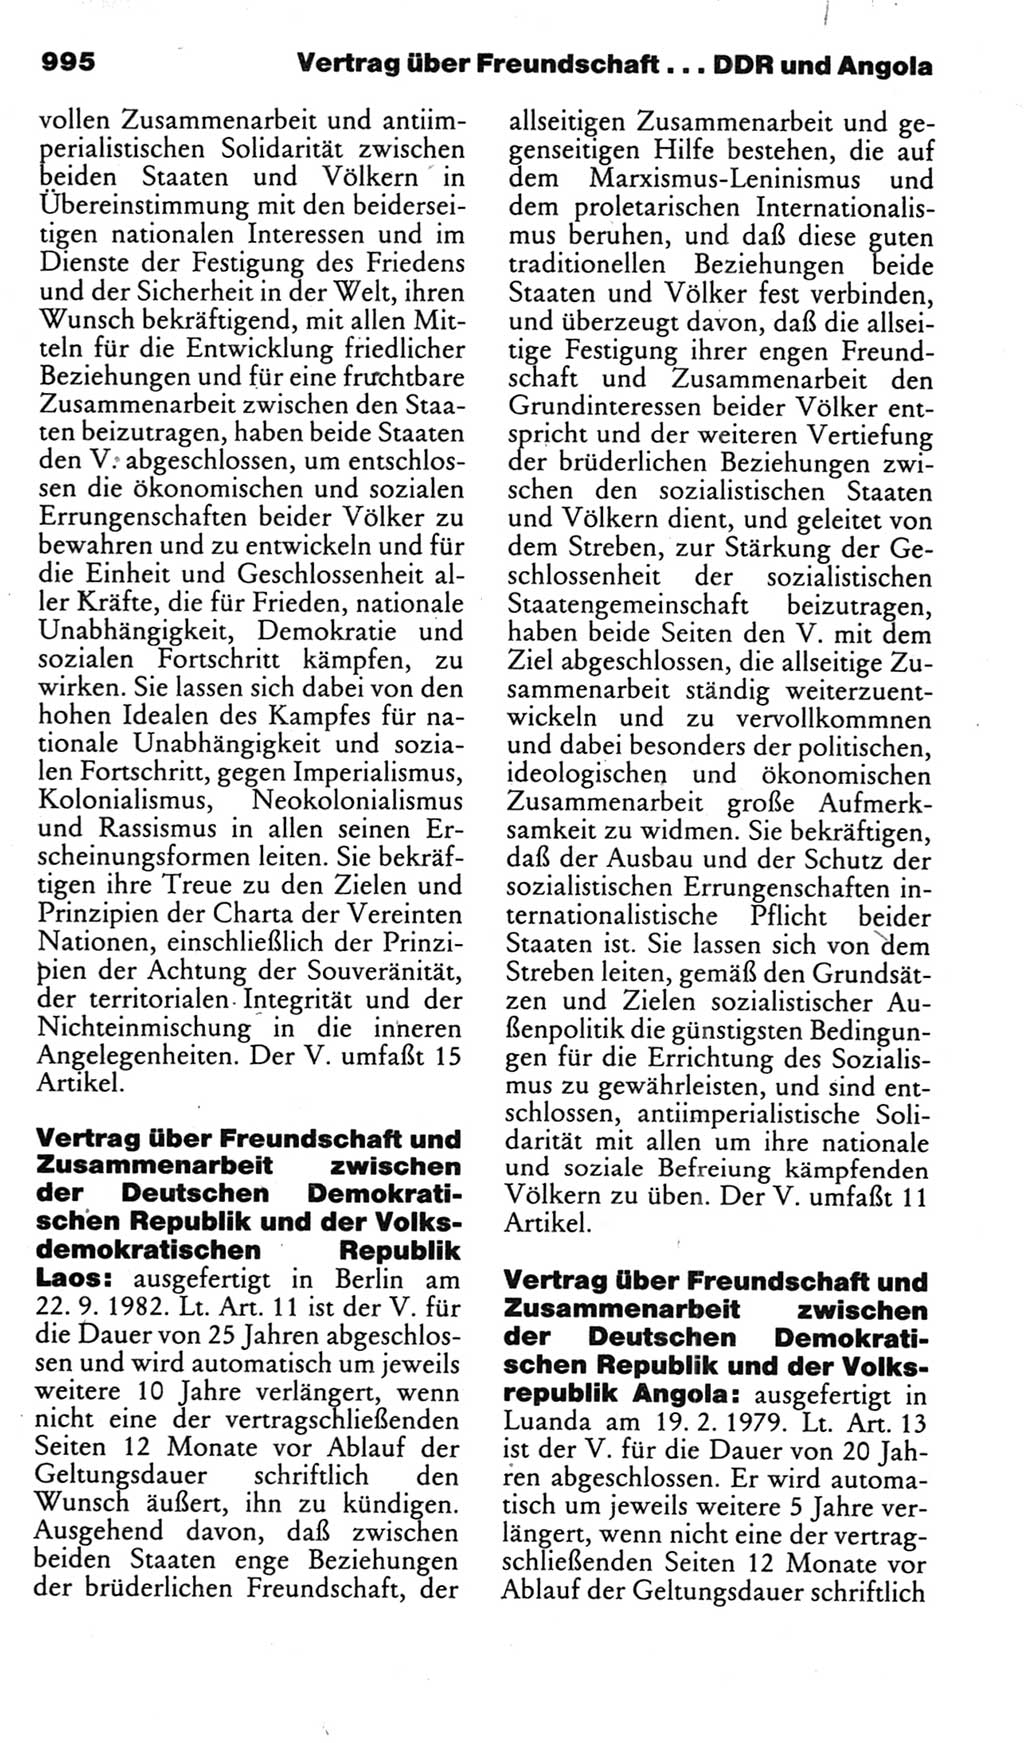 Kleines politisches Wörterbuch [Deutsche Demokratische Republik (DDR)] 1985, Seite 995 (Kl. pol. Wb. DDR 1985, S. 995)